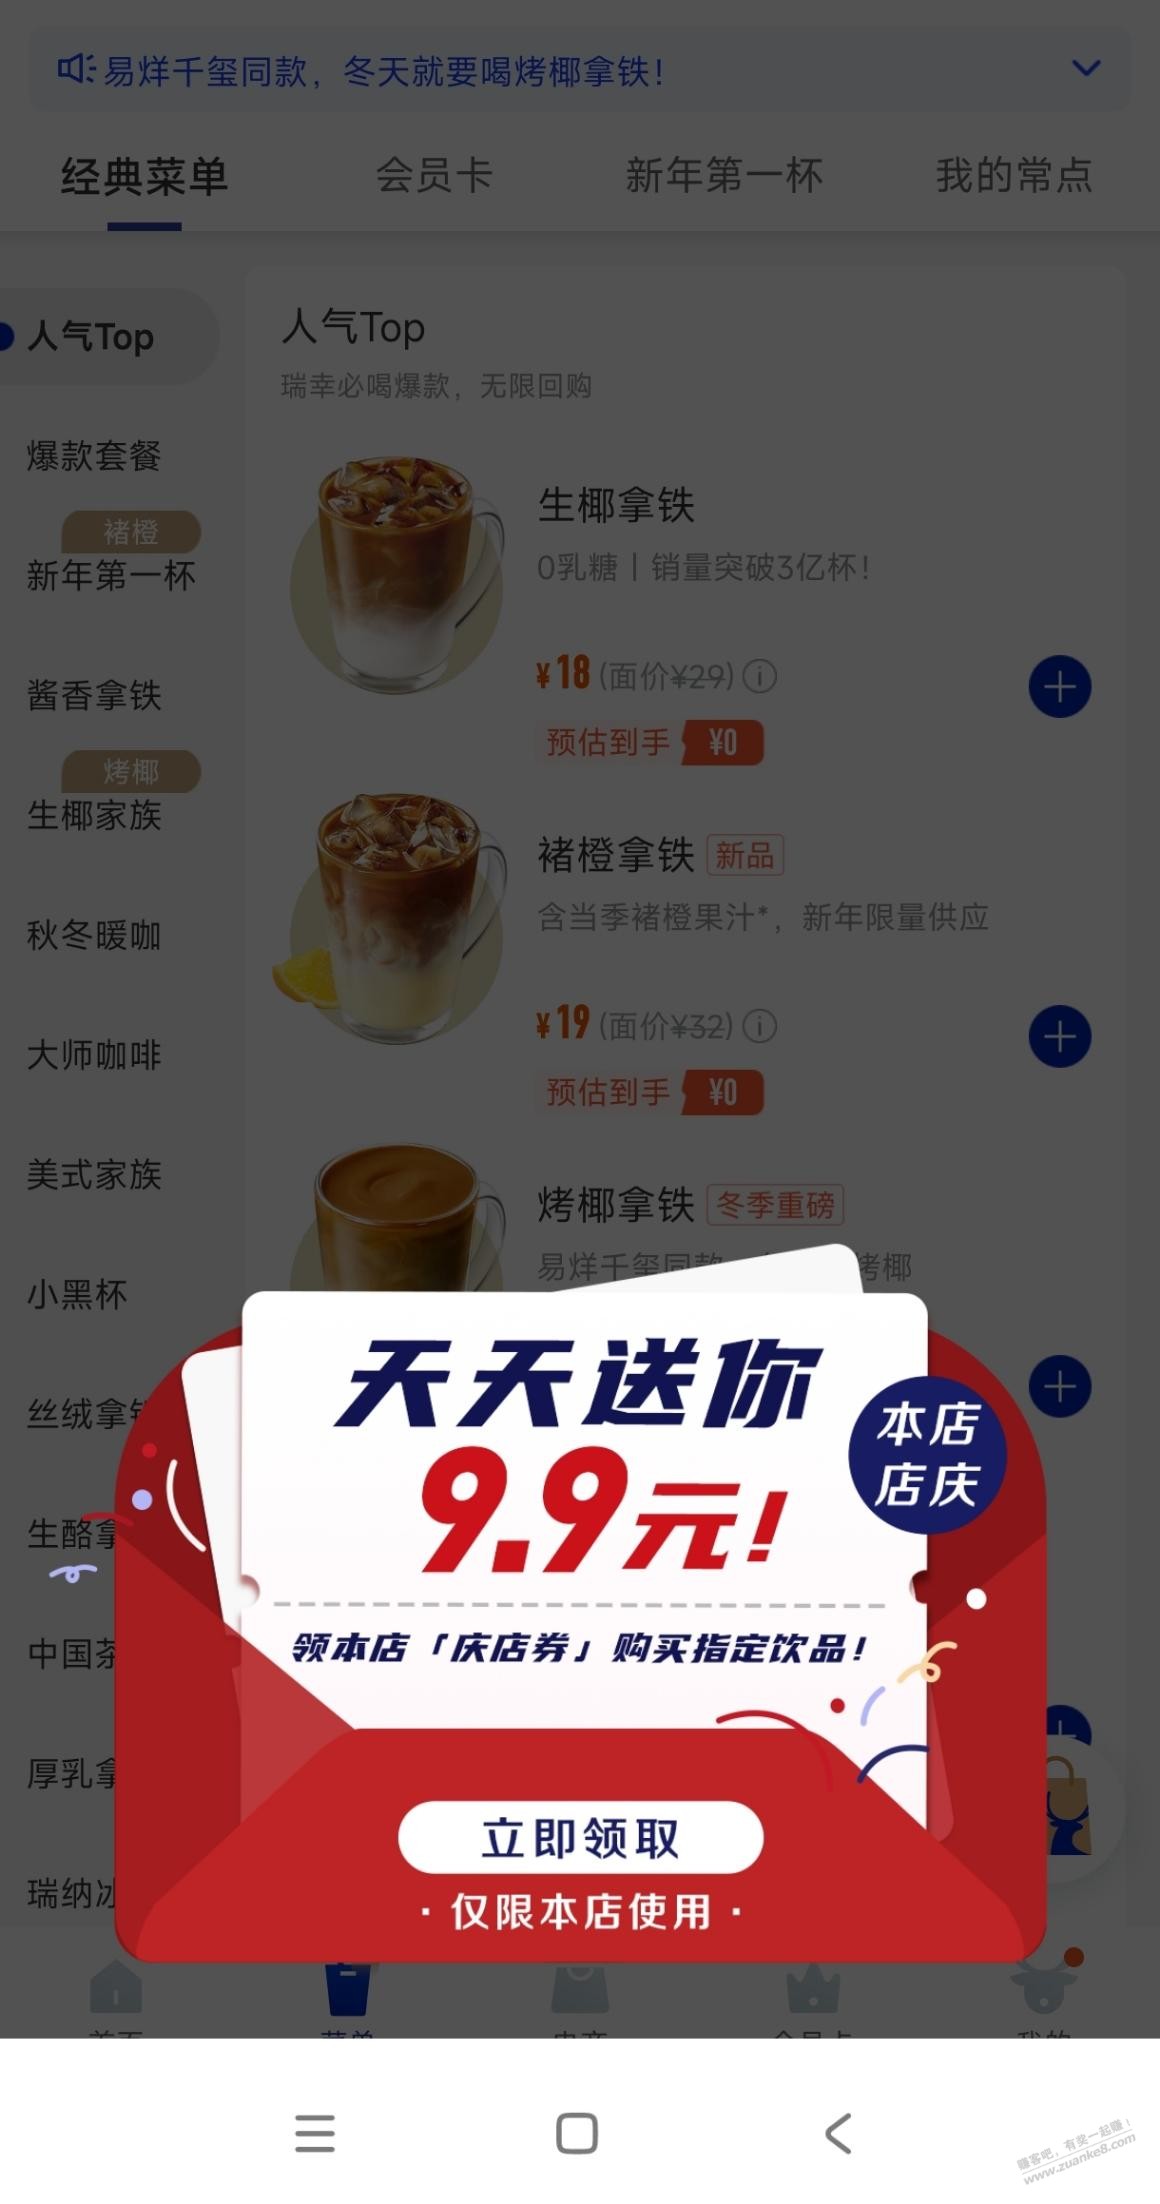 瑞幸9.9券进app就送那些饮品29/32代金券贬值严重-惠小助(52huixz.com)